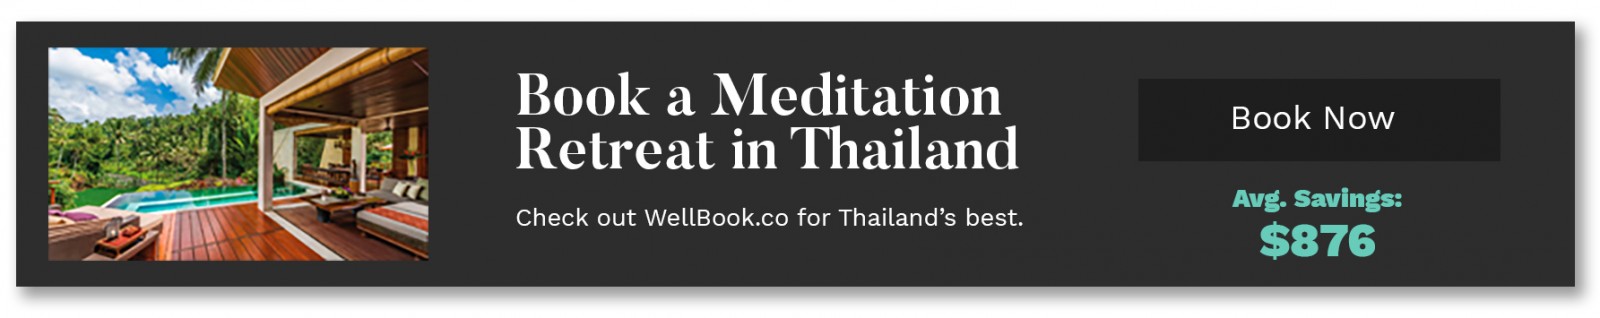 wellbook_ad_thailand